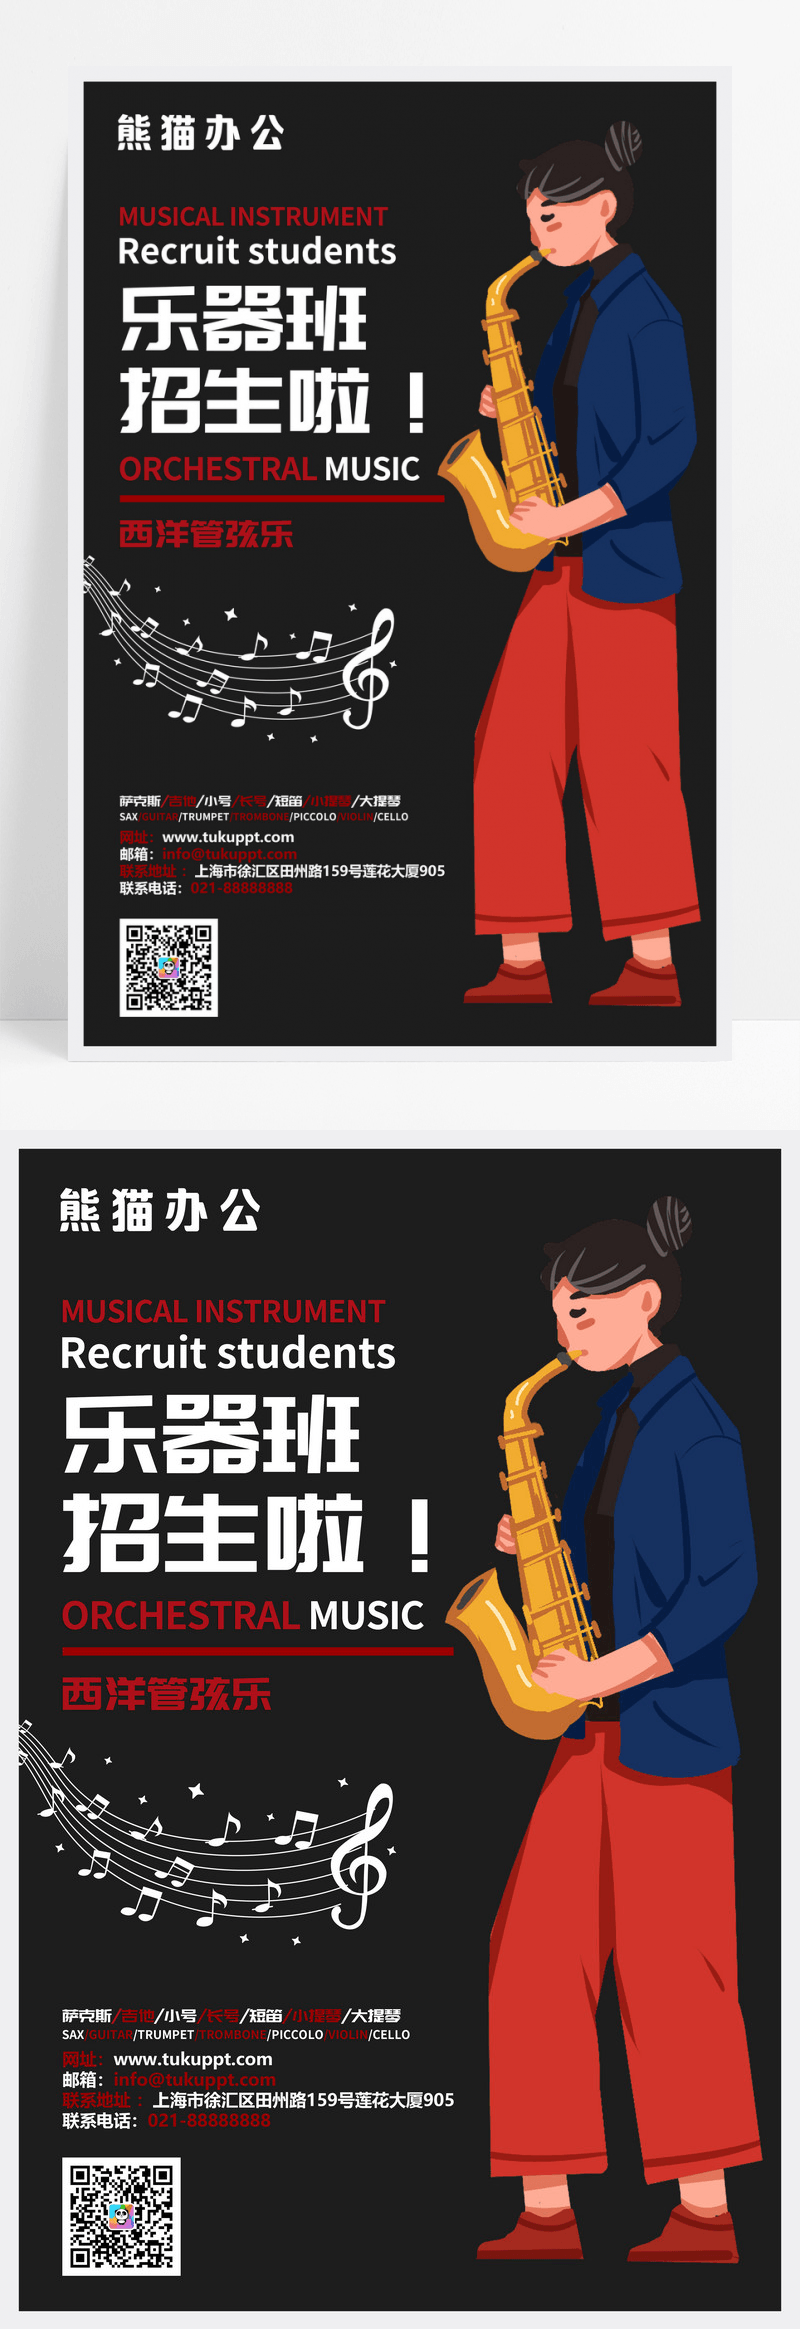 乐器培训机构招生海报